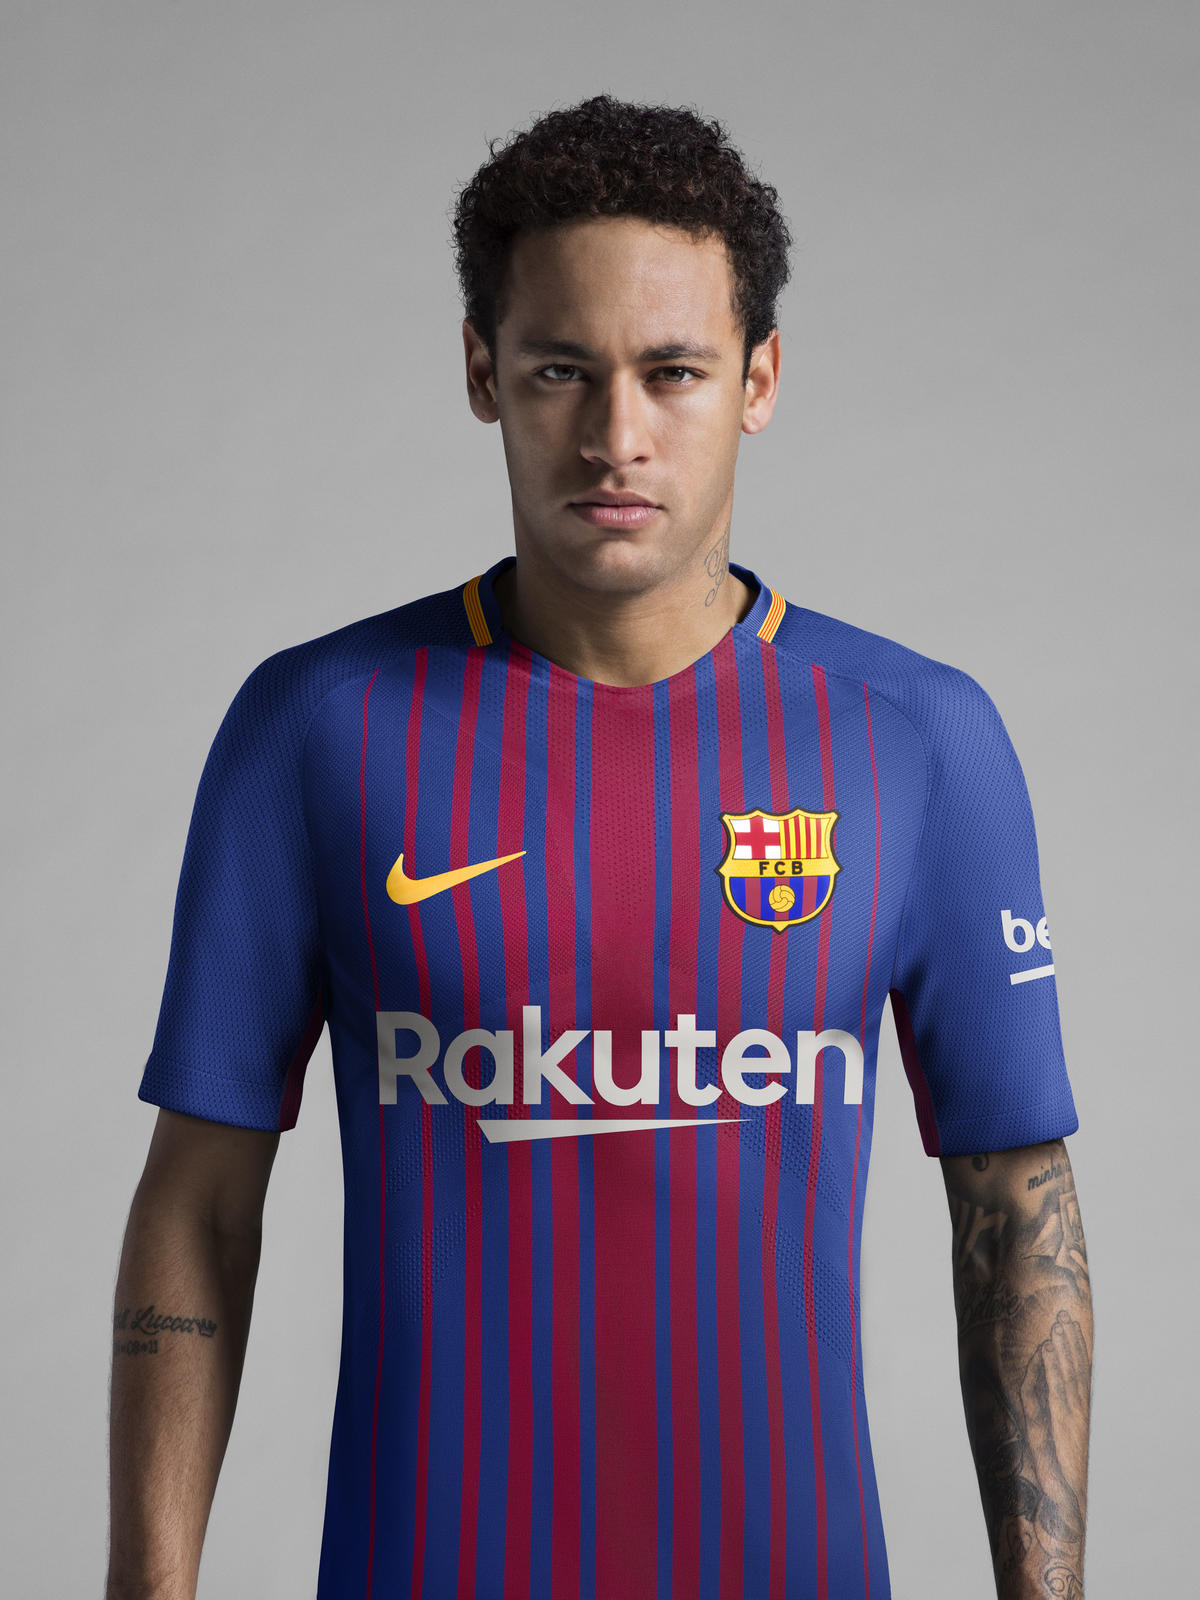 Componist werkplaats Verkeerd Nike launch FC Barcelona 2017-18 home kit!